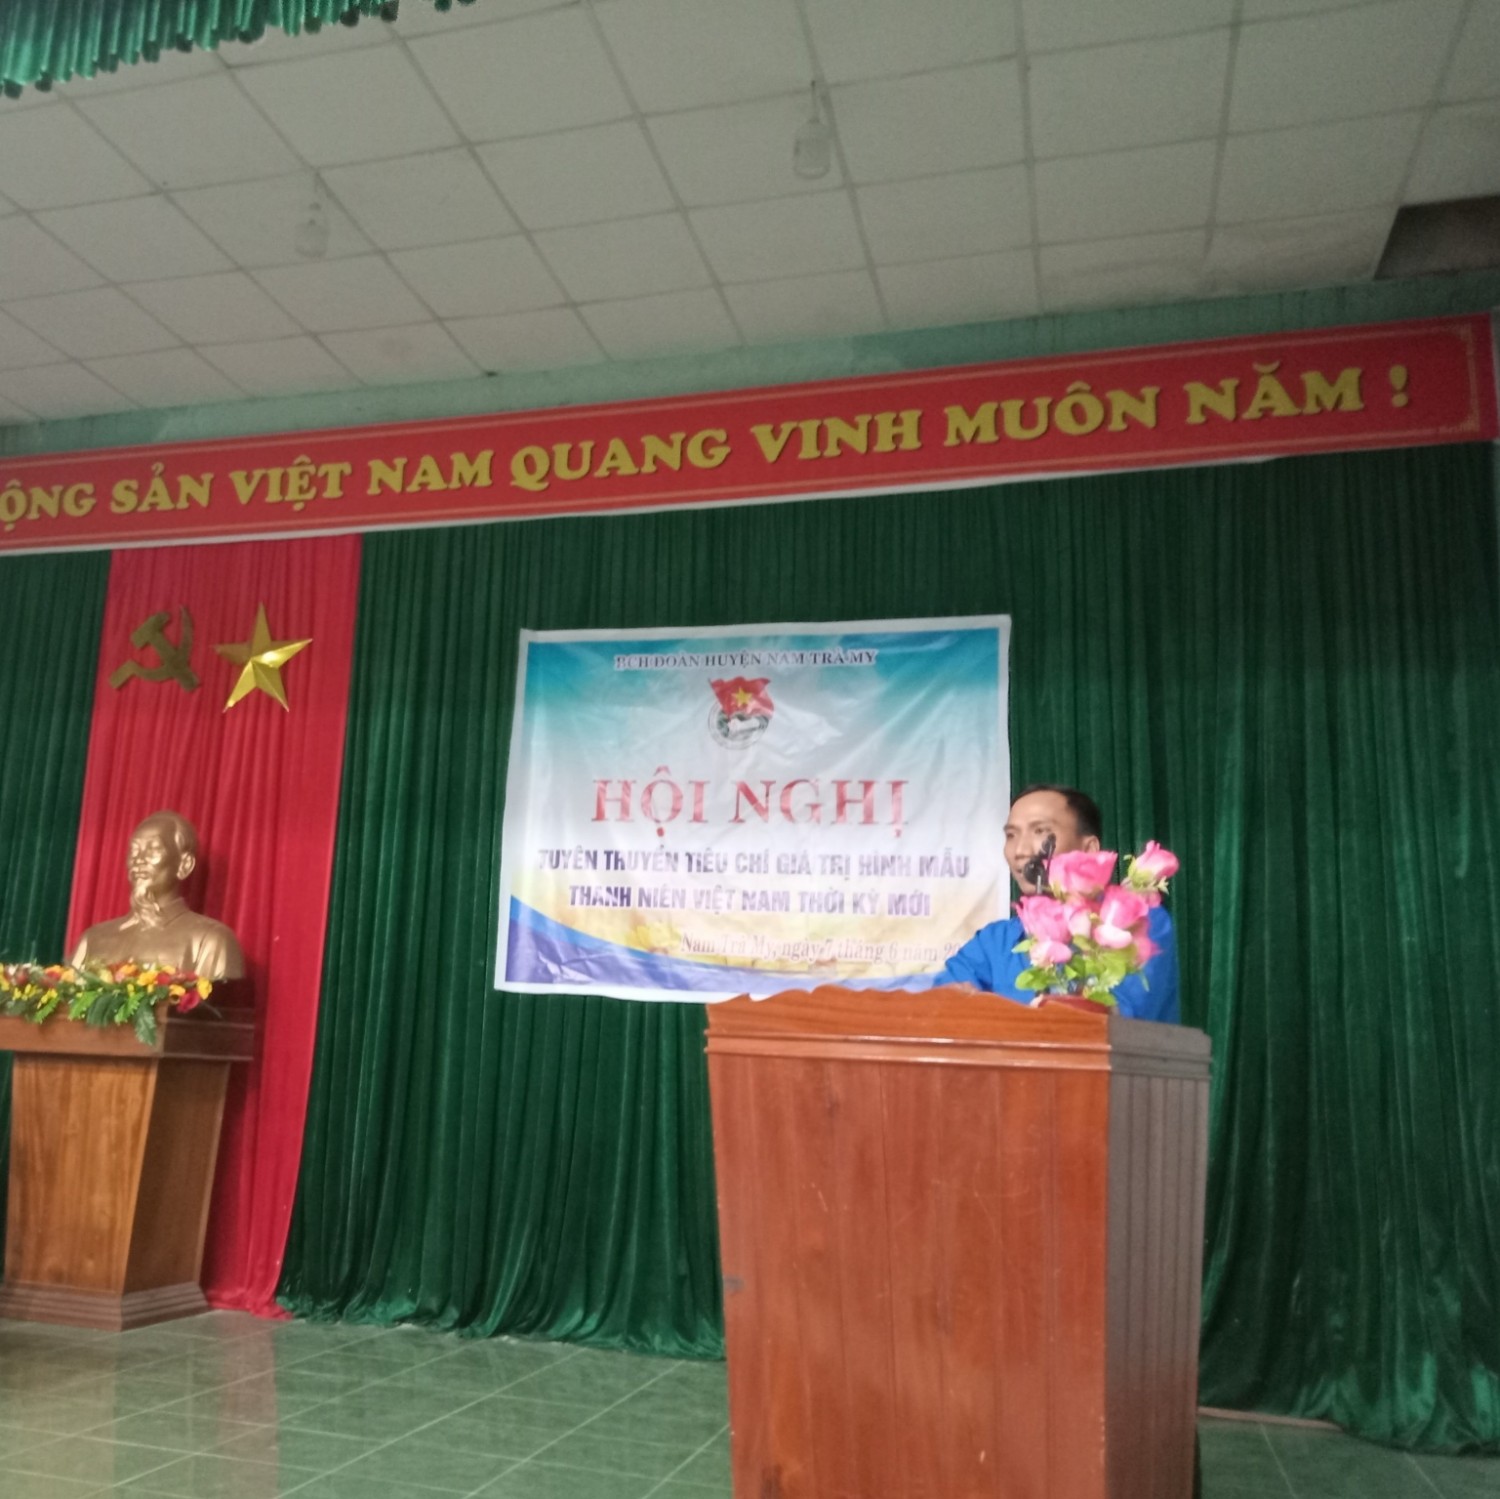 Tuyên truyền tiêu chí giá trị hình mẫu thanh niên Việt Nam thời kì mới